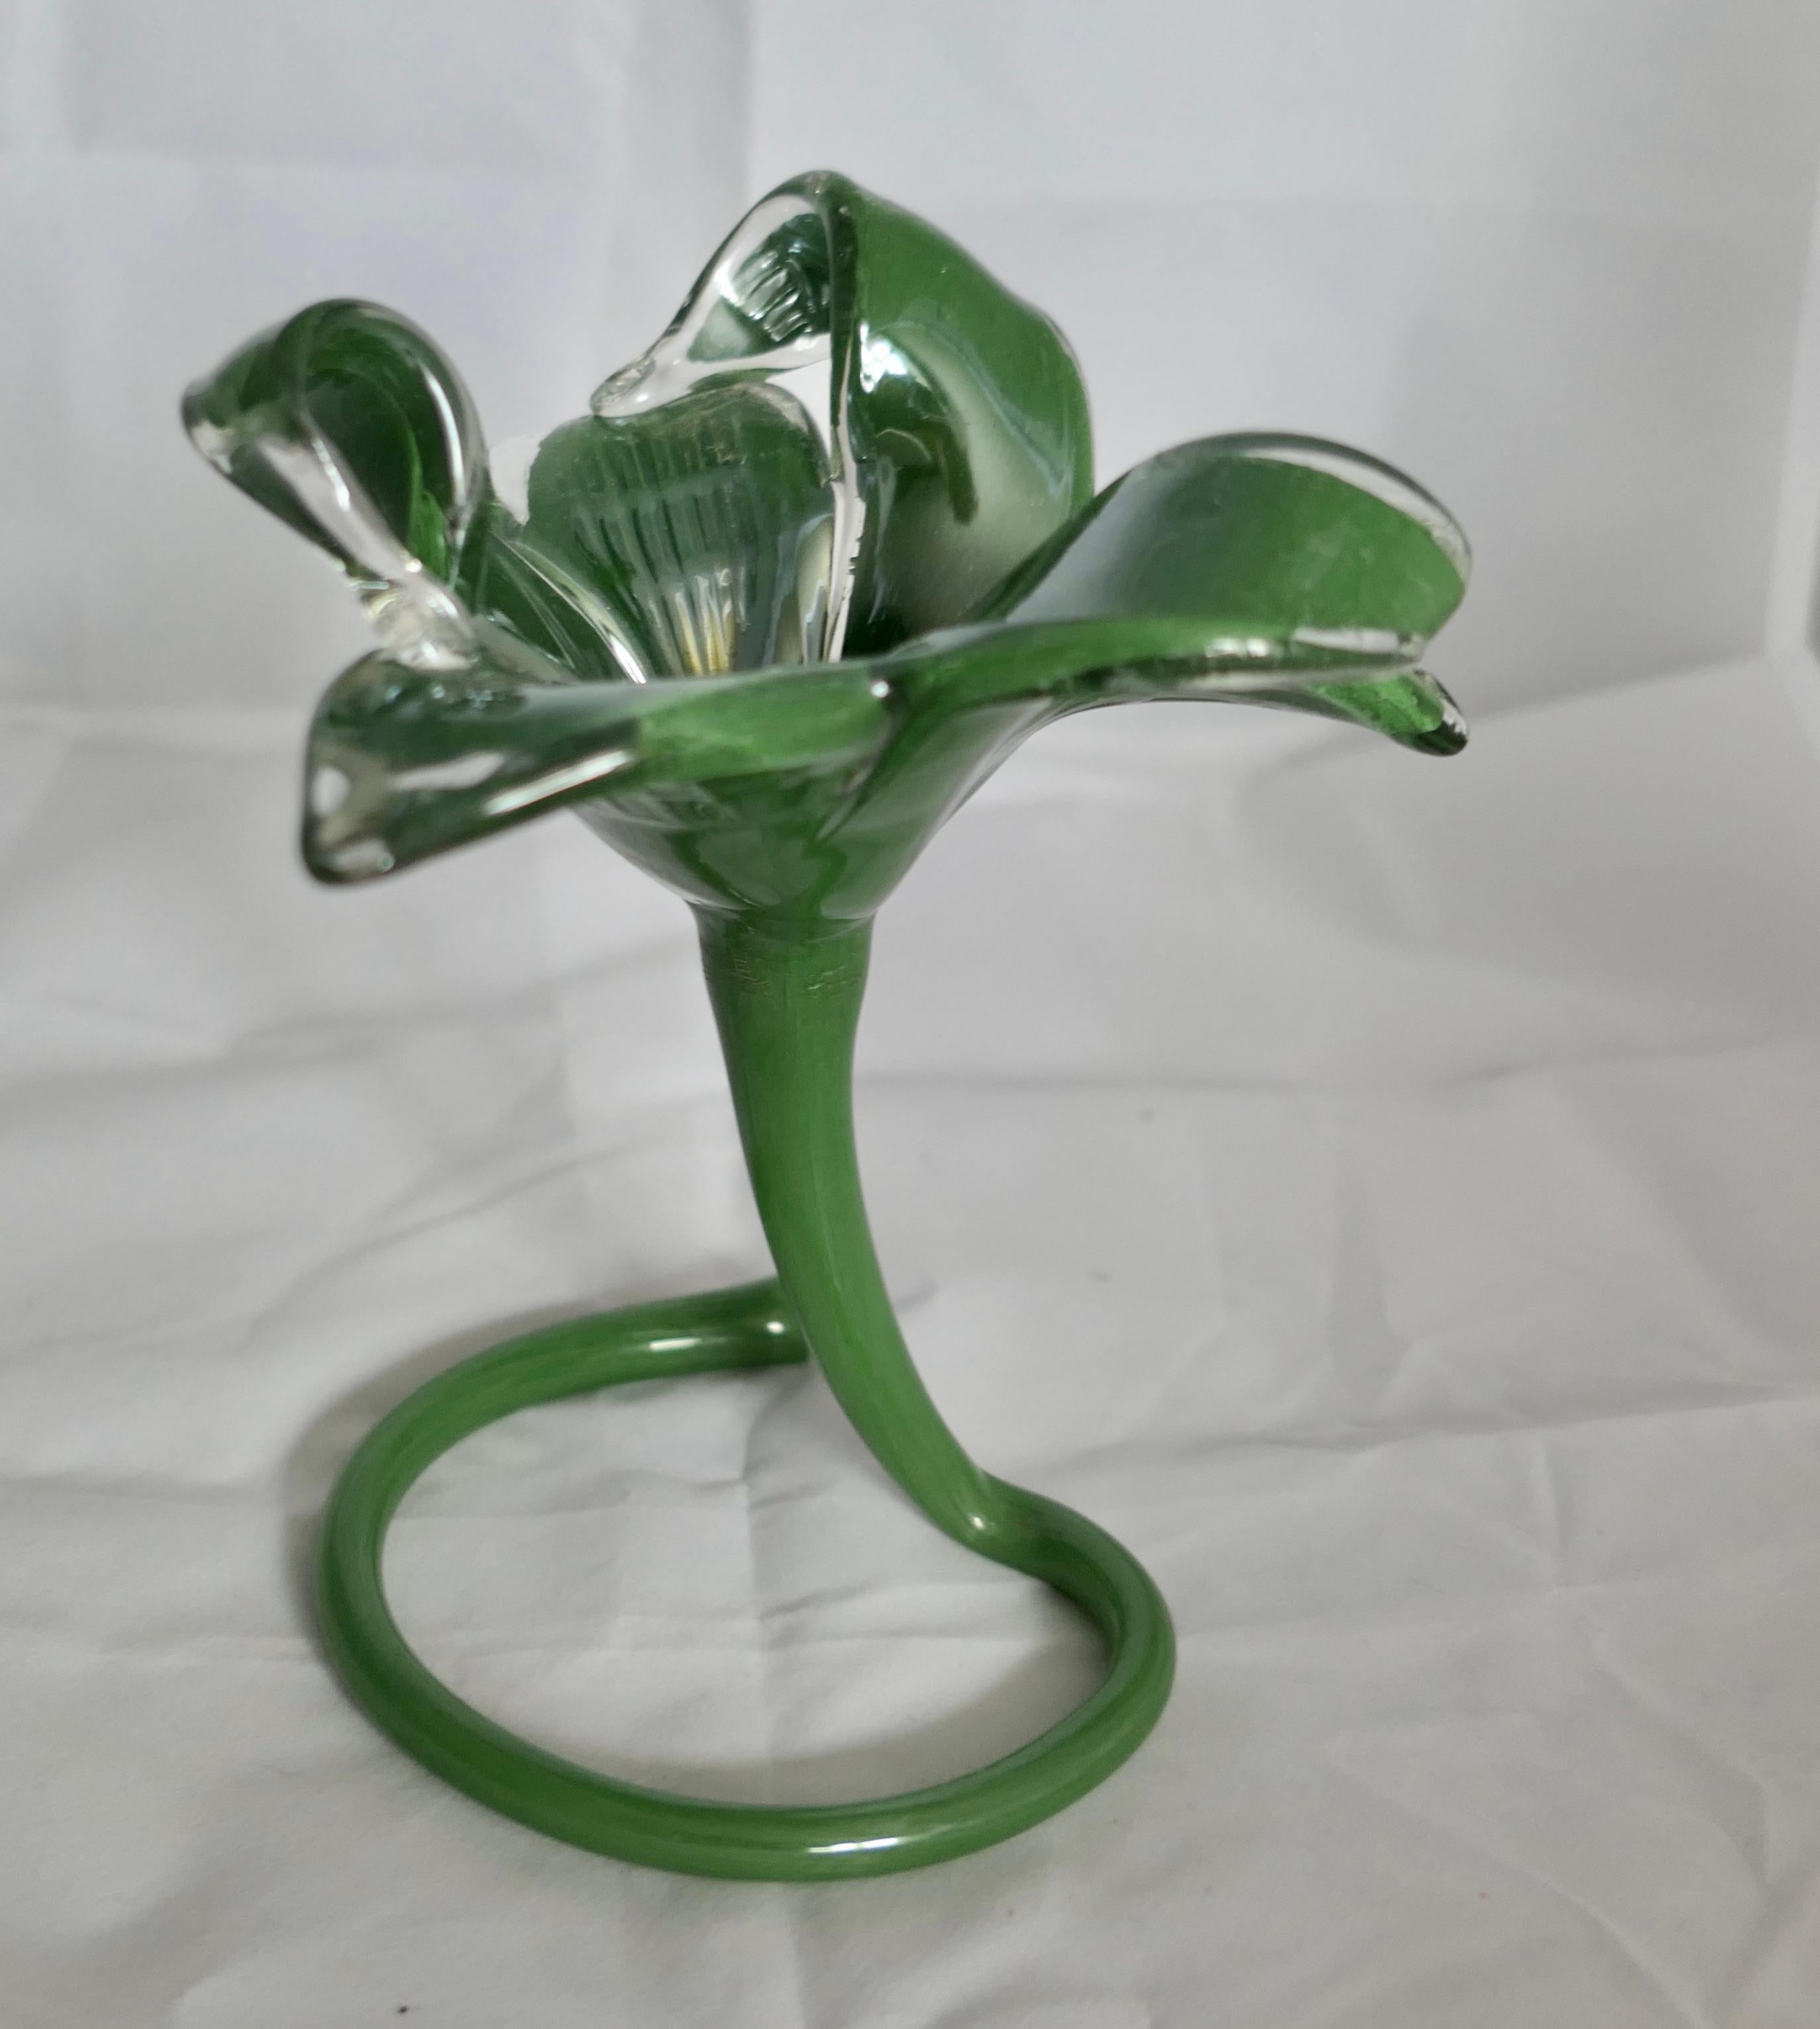 Handgeblasene Vintage Murano Grüner Jack in the Pulpit Vase

Ein hervorragendes Beispiel für eine Lilly- oder Jack-in-the-Pulpit-Vase. Diese Vase hat ein Amaryllis-Design mit kunstvoll gedrehten Blütenblättern und einem kräftigen, gewundenen